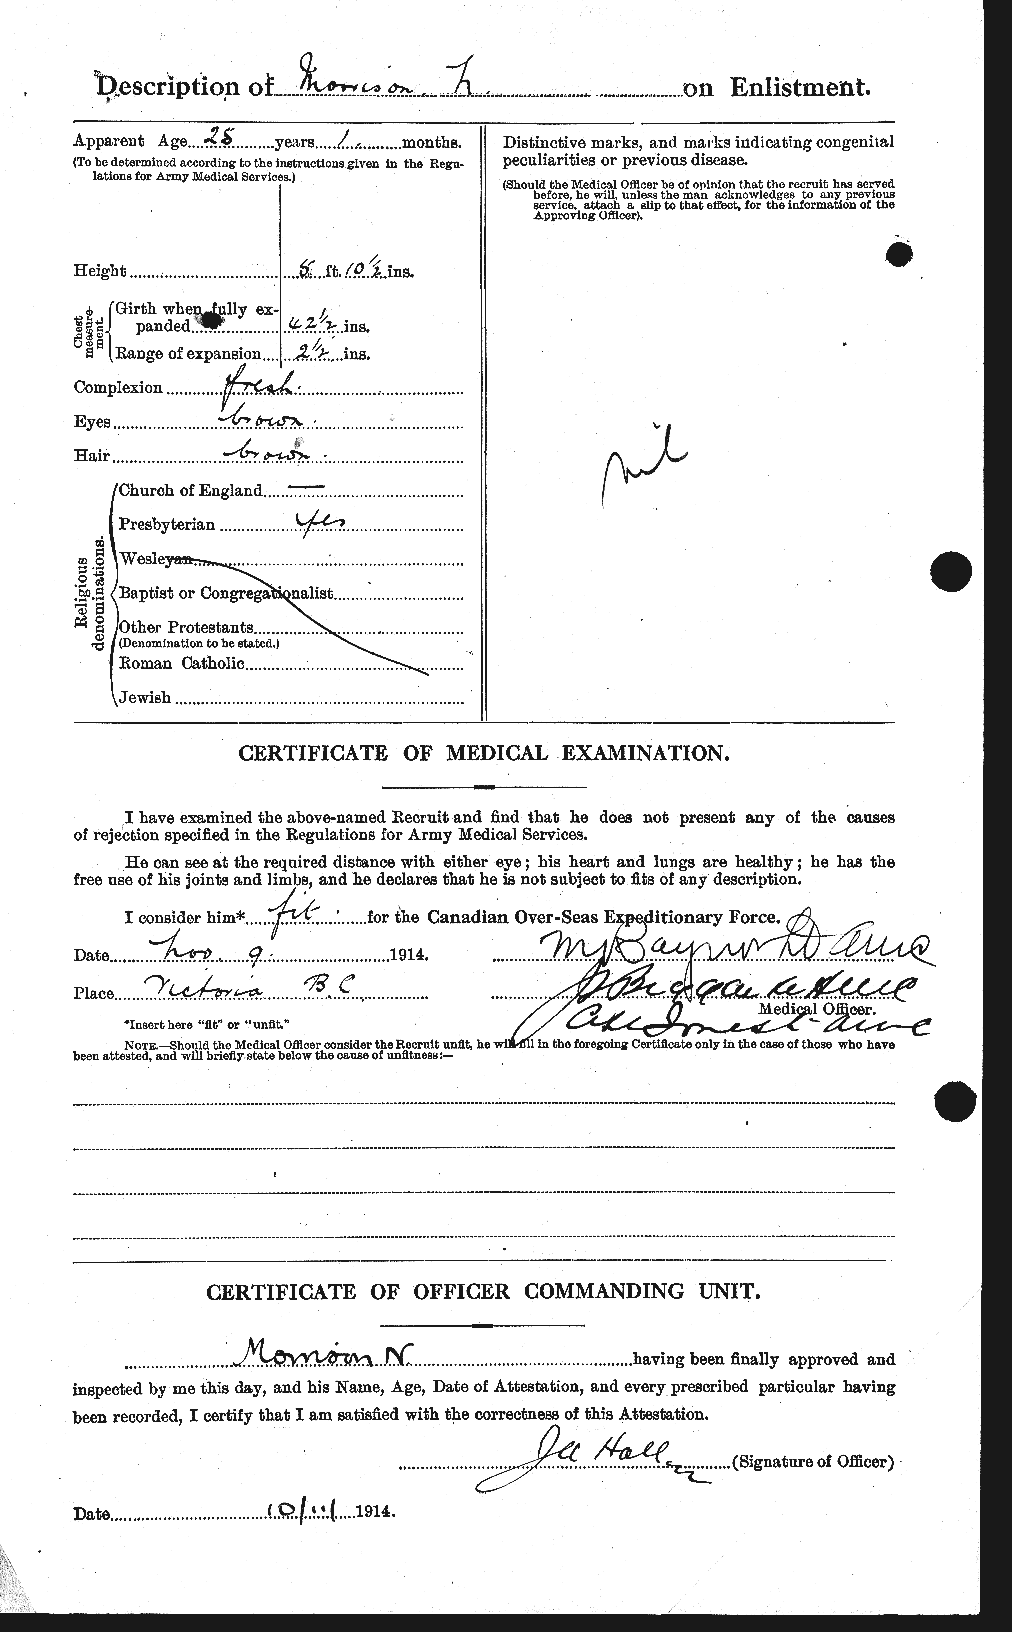 Dossiers du Personnel de la Première Guerre mondiale - CEC 509034b